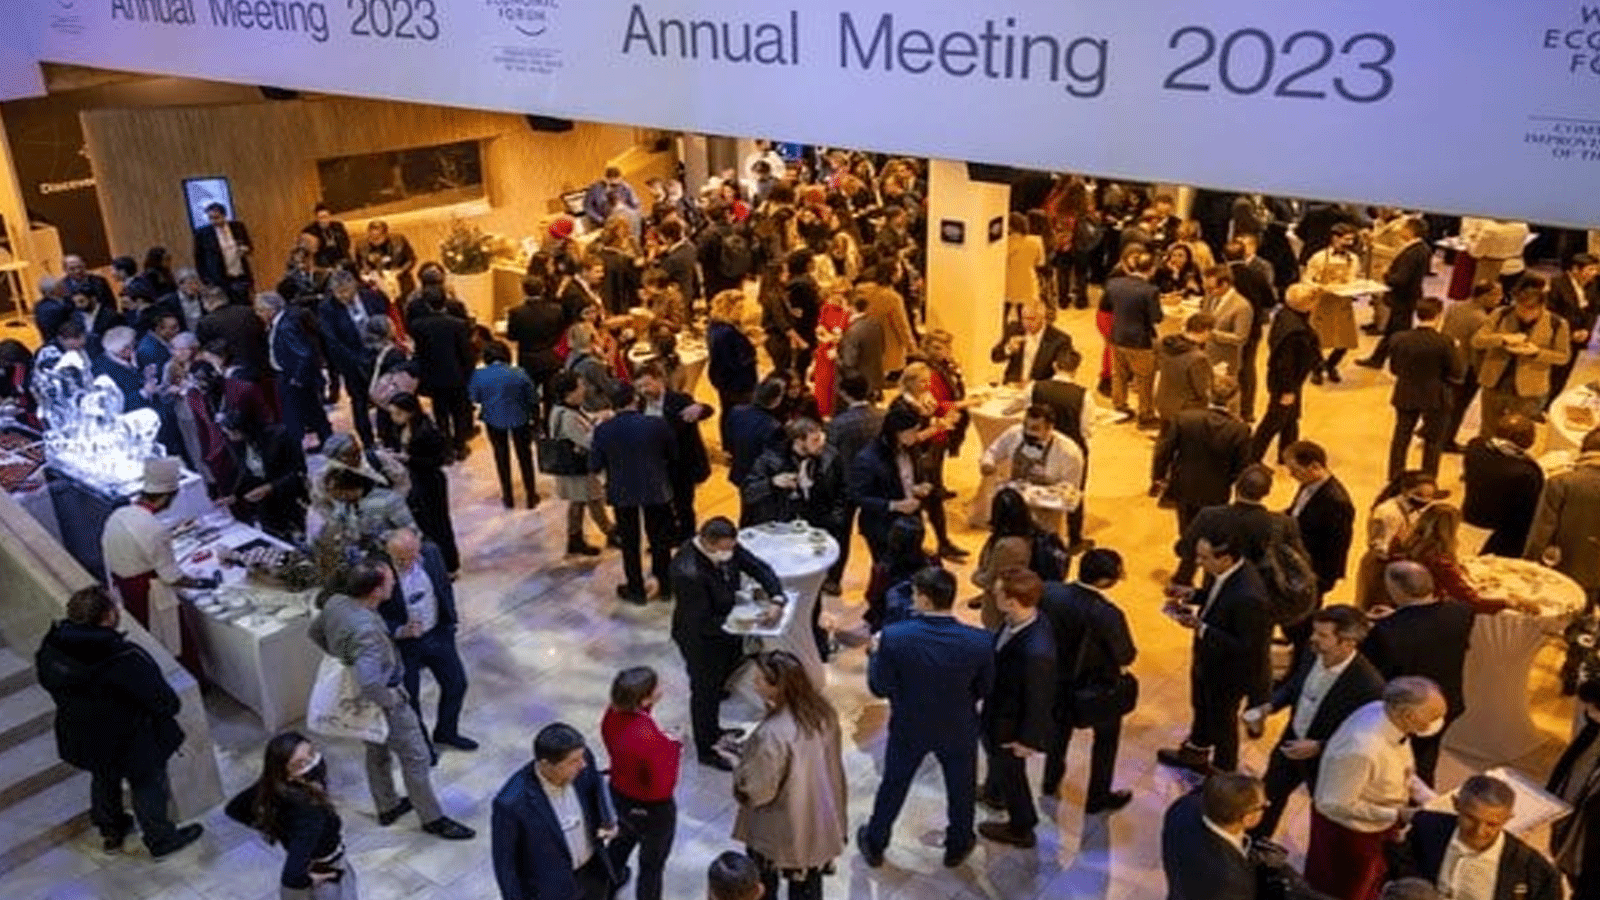 المشاركون في حفل استقبال ترحيبي في يوم افتتاح الاجتماع السنوي للمنتدى الاقتصادي العالمي (WEF)